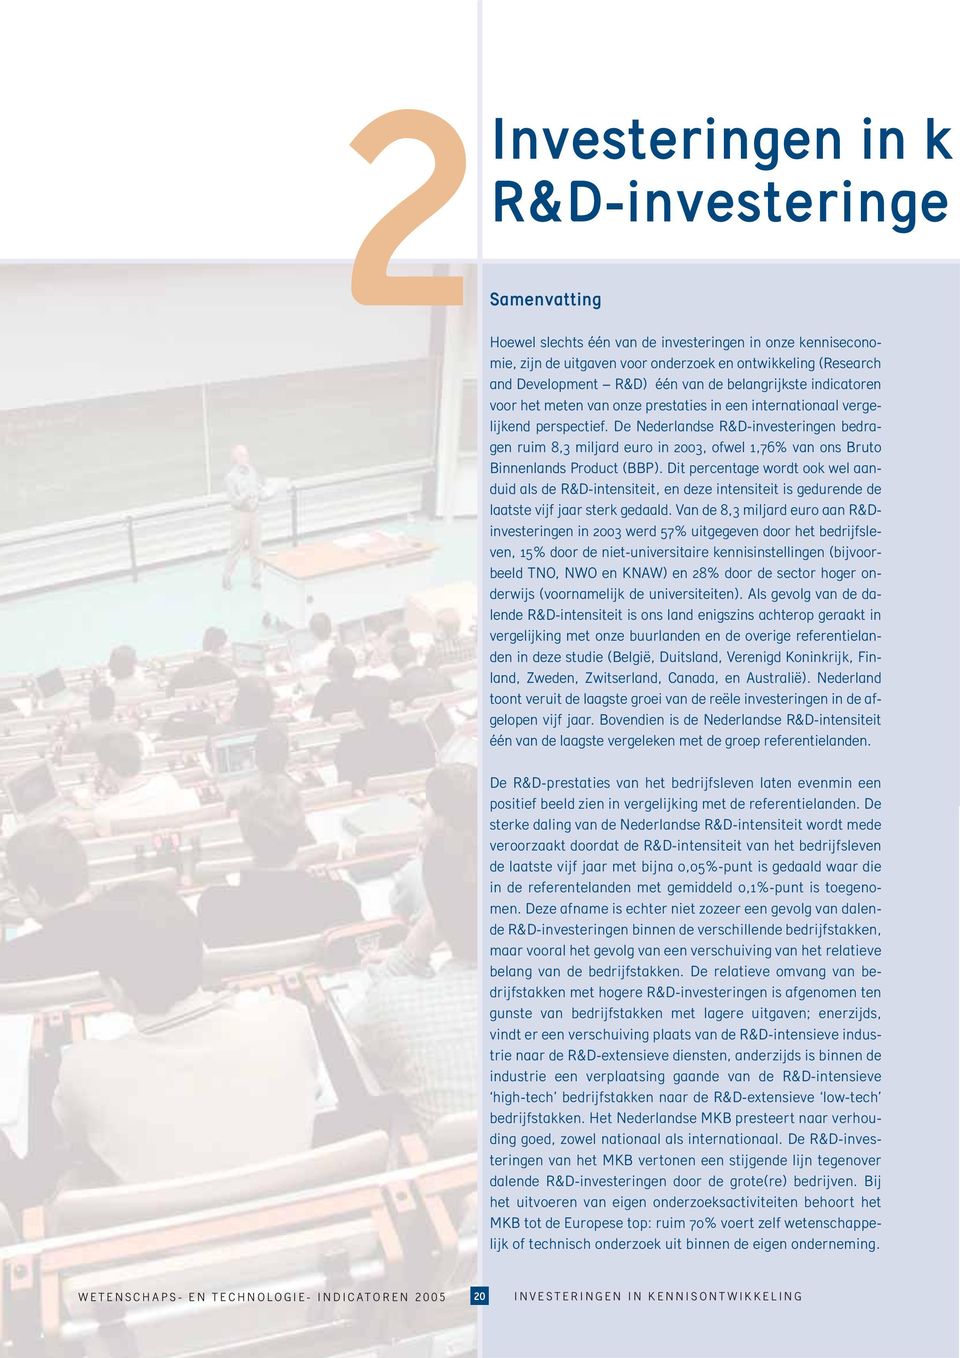 De Nederlandse R&D-investeringen bedragen ruim 8,3 miljard euro in 2003, ofwel 1,76% van ons Bruto Binnenlands Product (BBP).